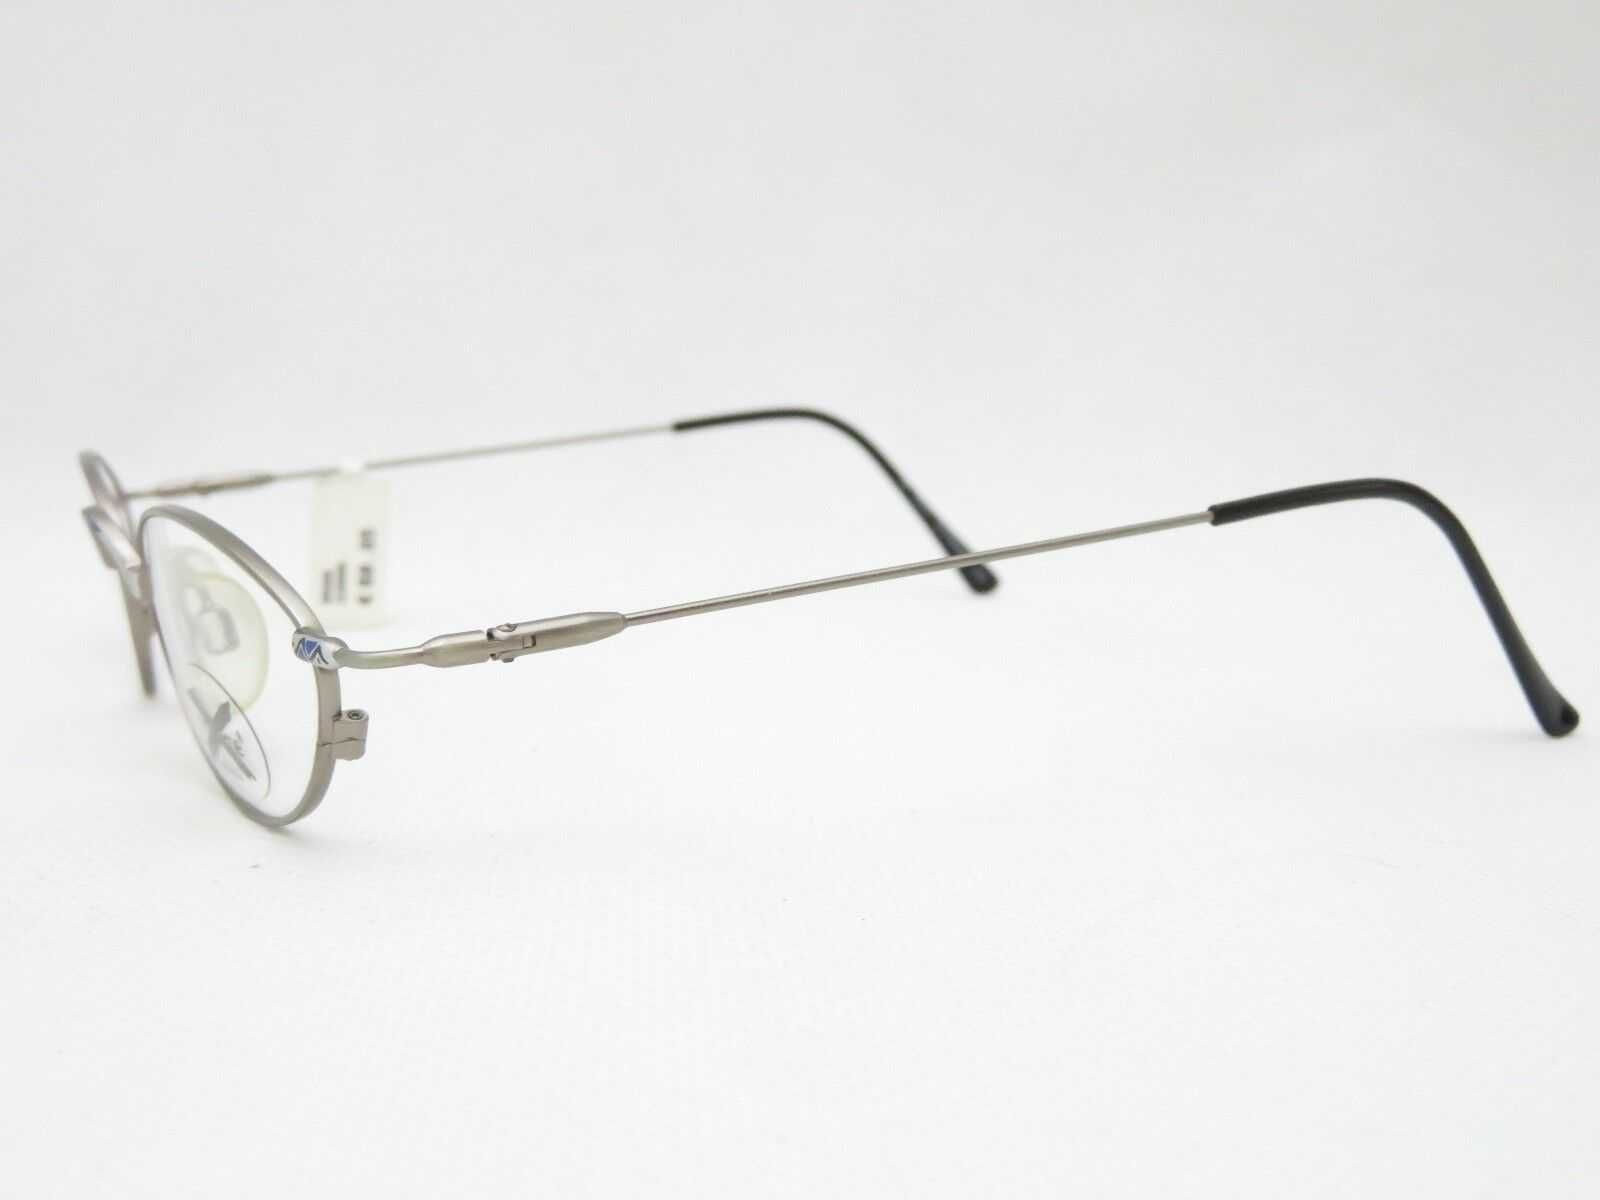 Rame de ochelari finuțe, metalice, aduse din Germania, noi